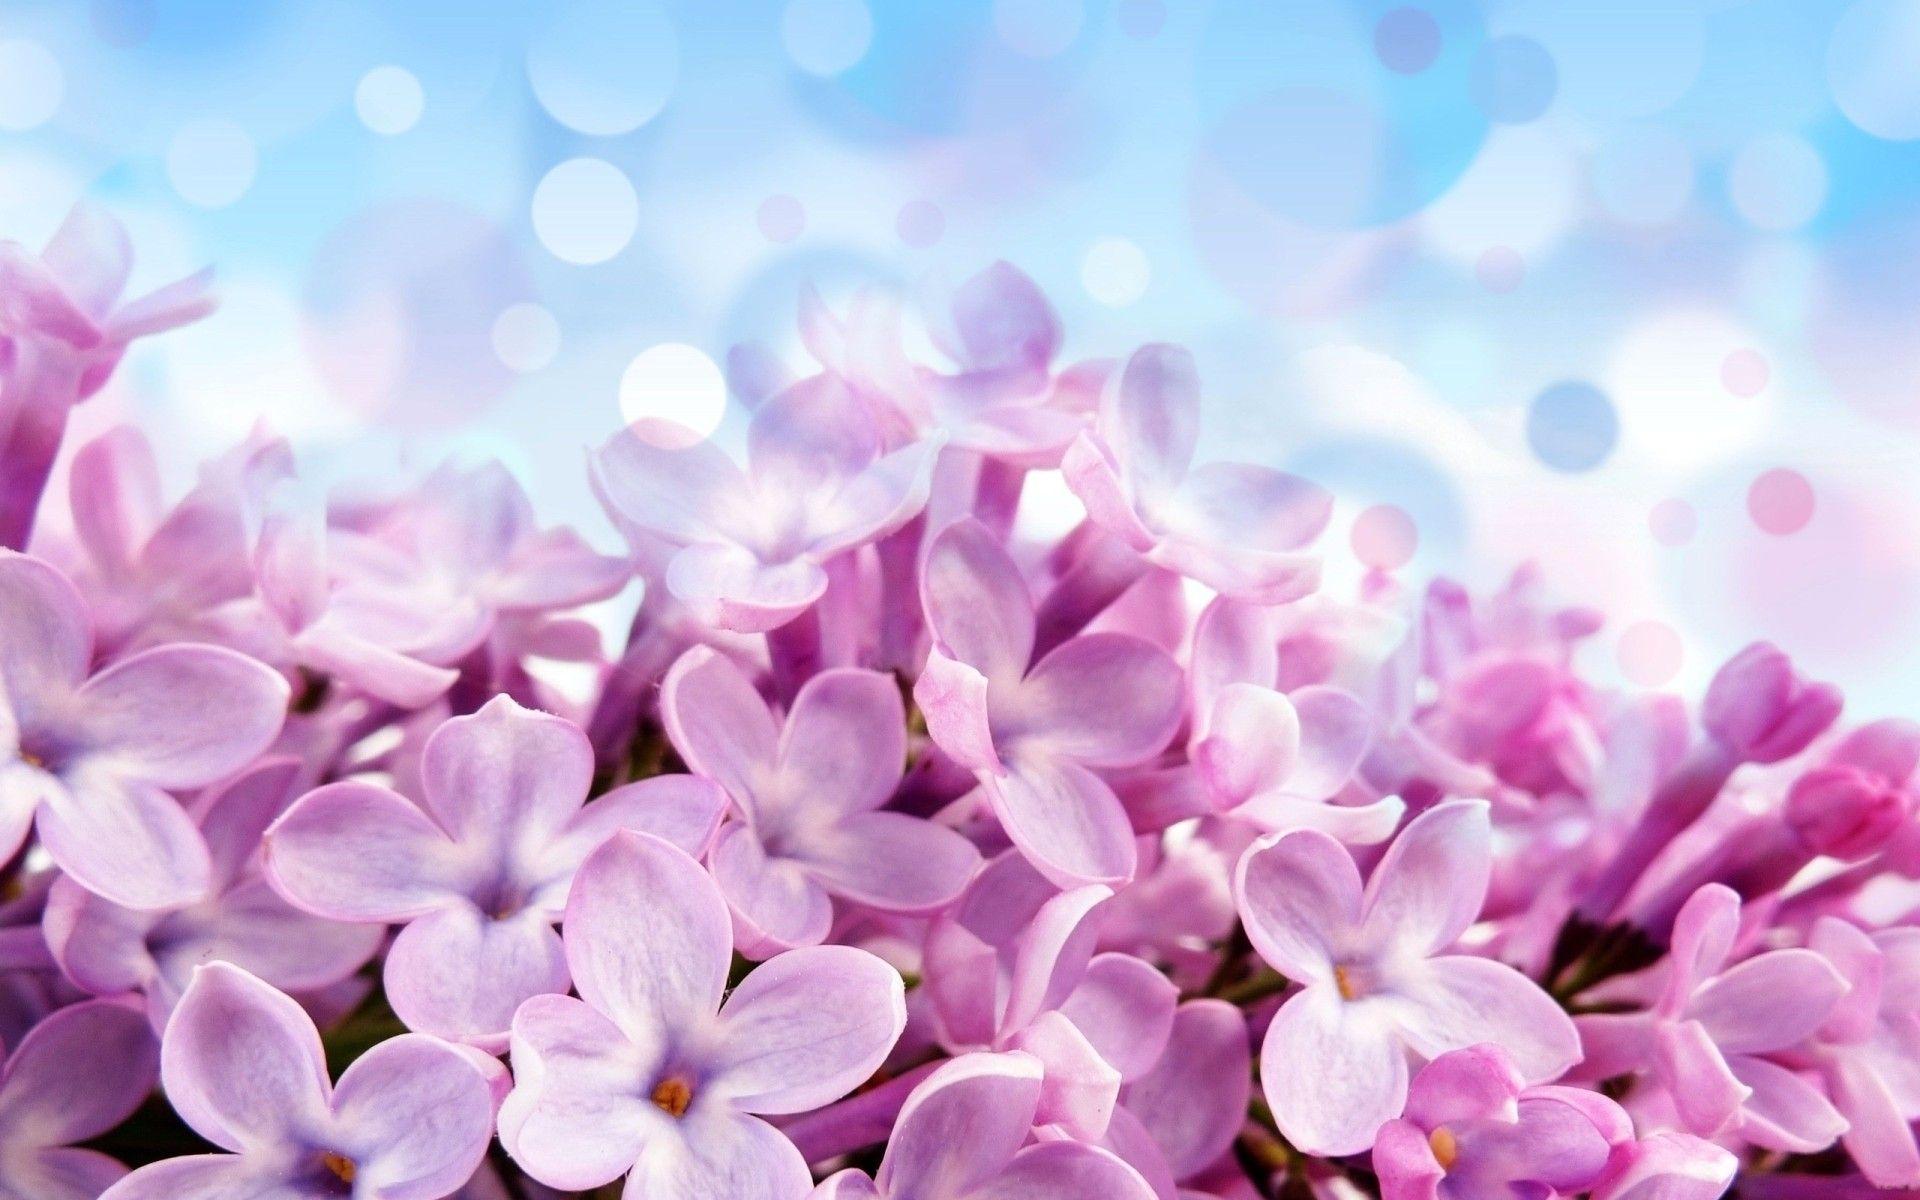 purple hyacinth hd - HD Desktop Wallpapers | 4k HD